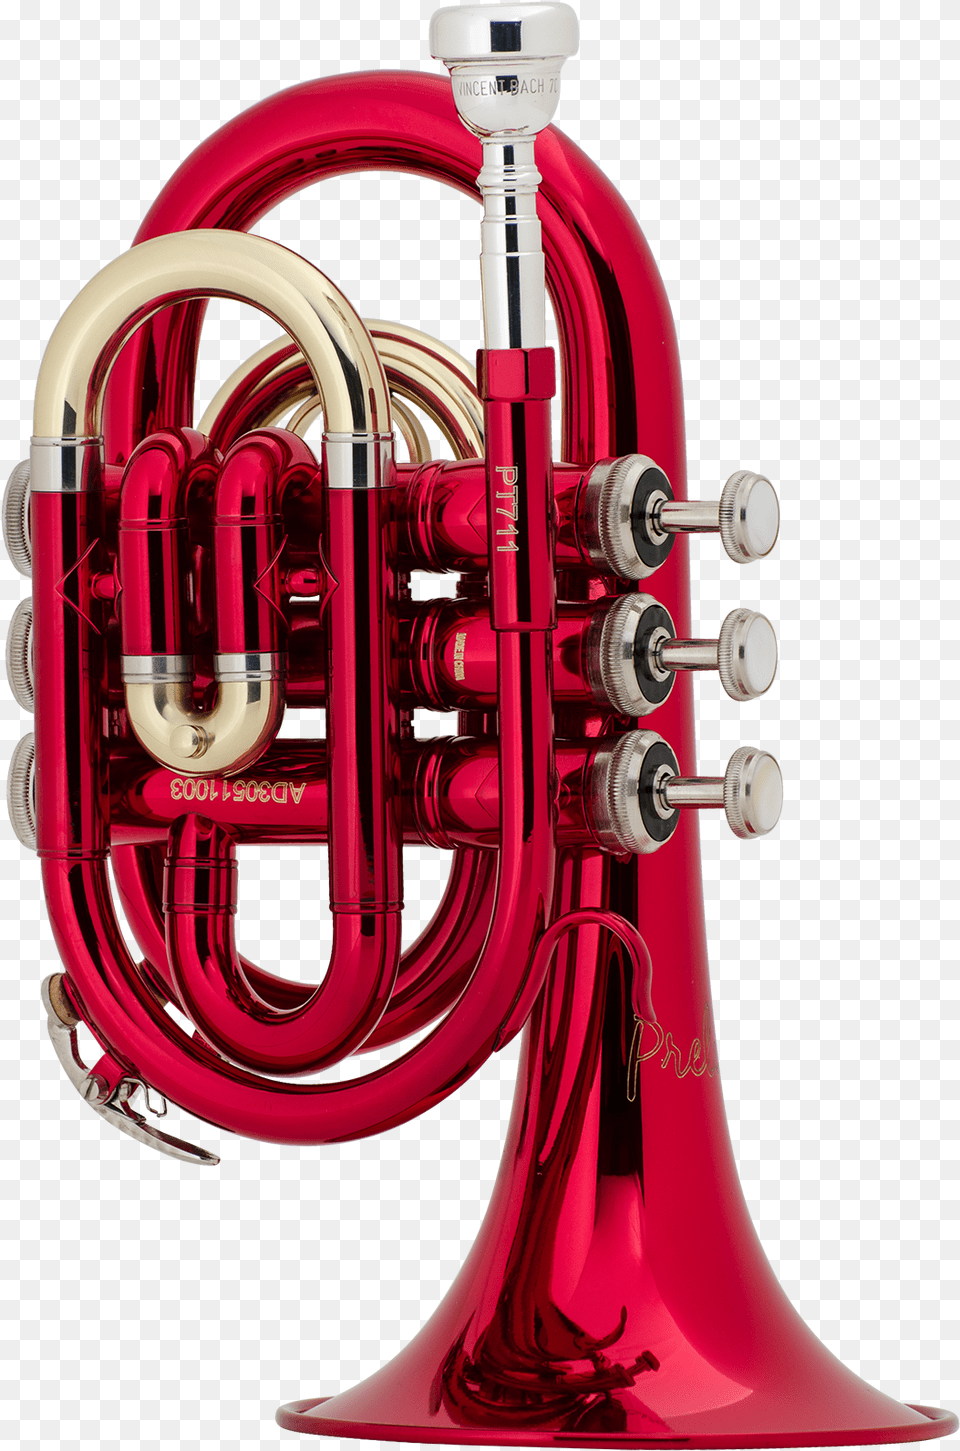 Jupiter Pocket Trumpet, Musical Instrument, Brass Section, Horn, Flugelhorn Free Transparent Png